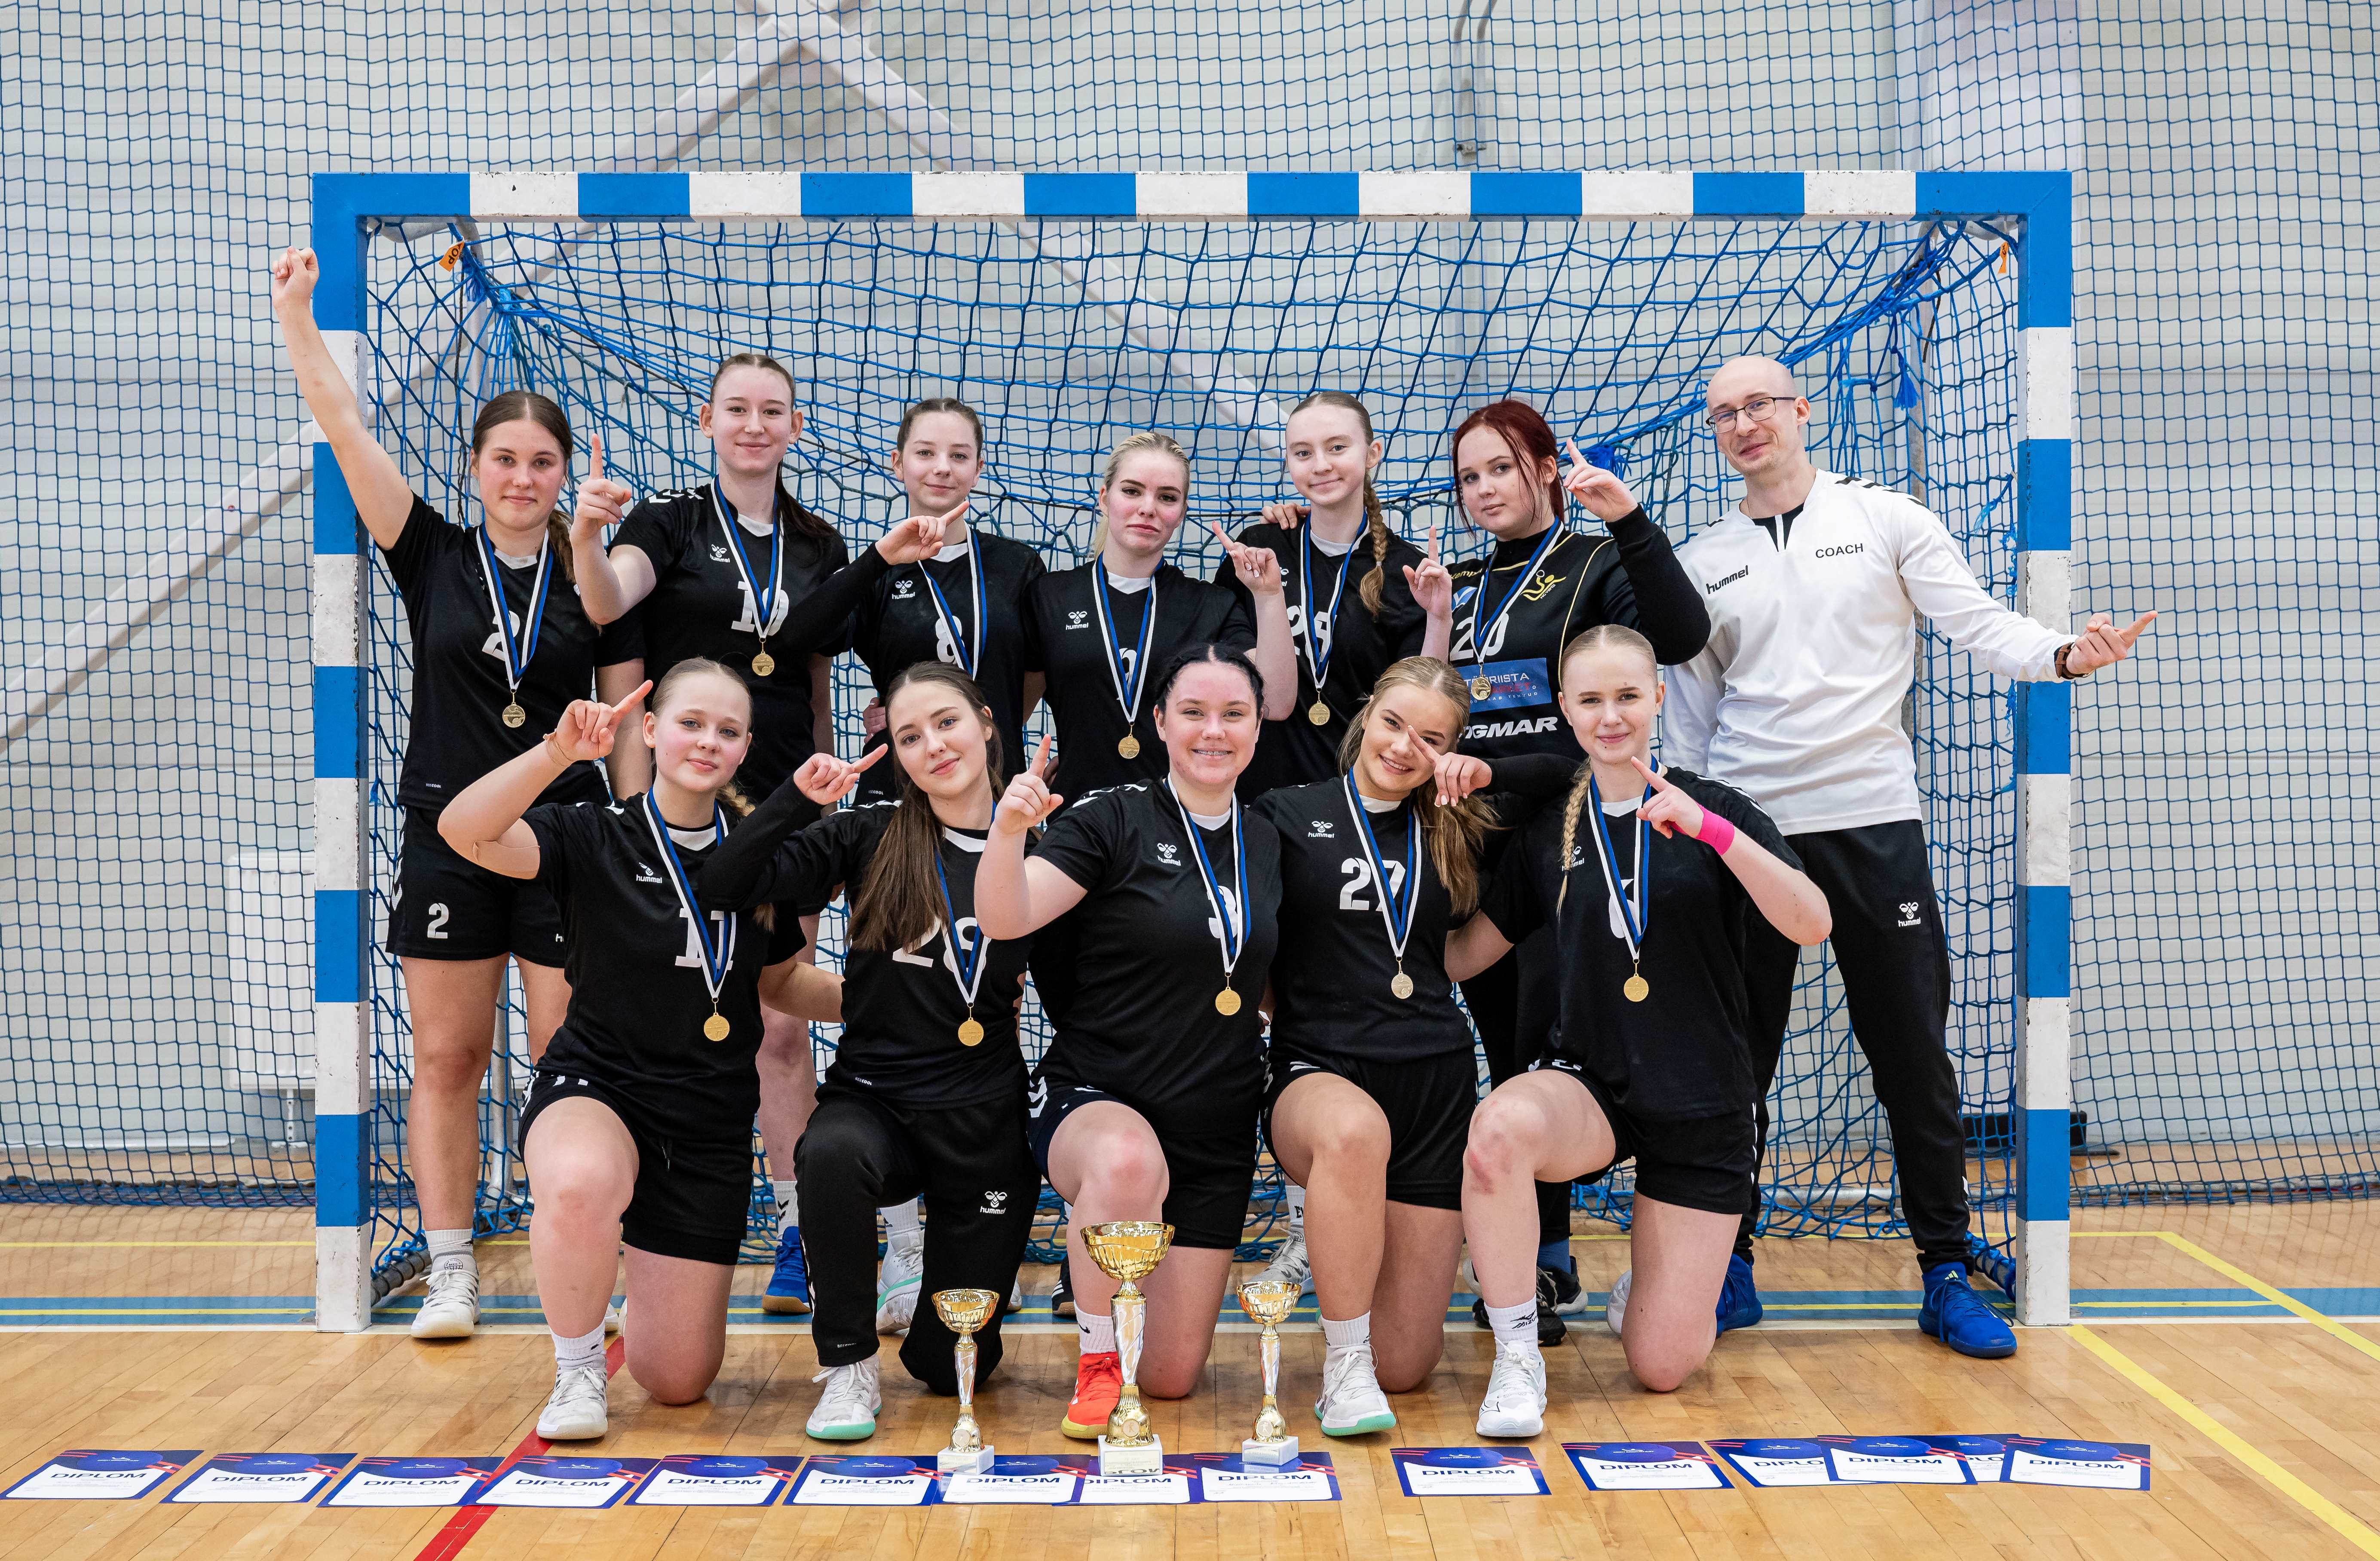 Mustamäe Käsipalliklubi võistkond on 2024 Eesti meister tütarlaste B vanuseklassi käsipallis